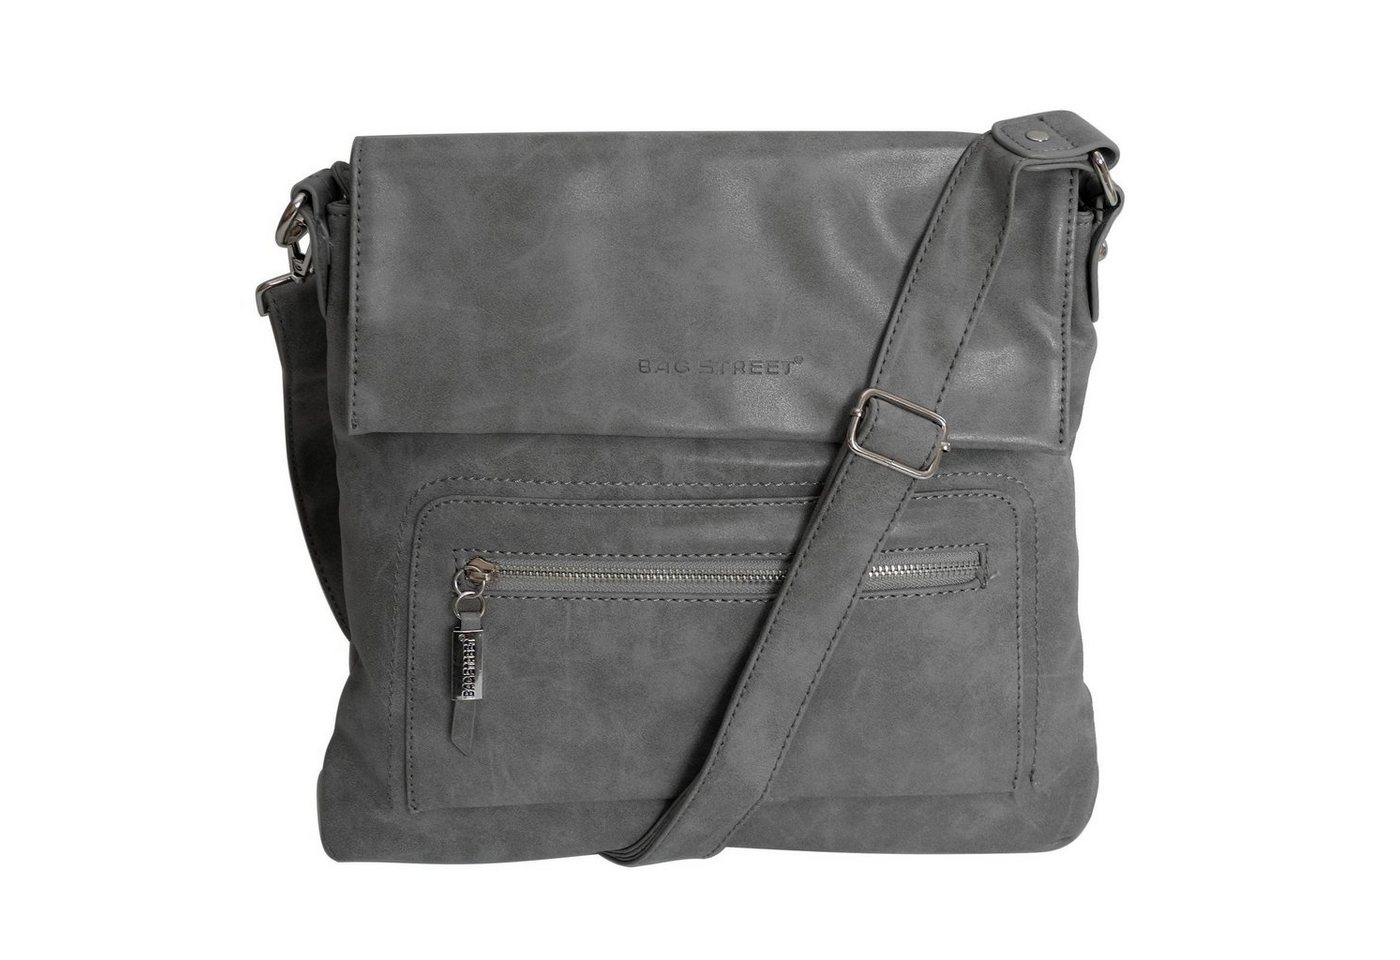 BAG STREET Handtasche Bag Street - Damen Messengerbag Damentasche Umhängetasche Auswahl von BAG STREET